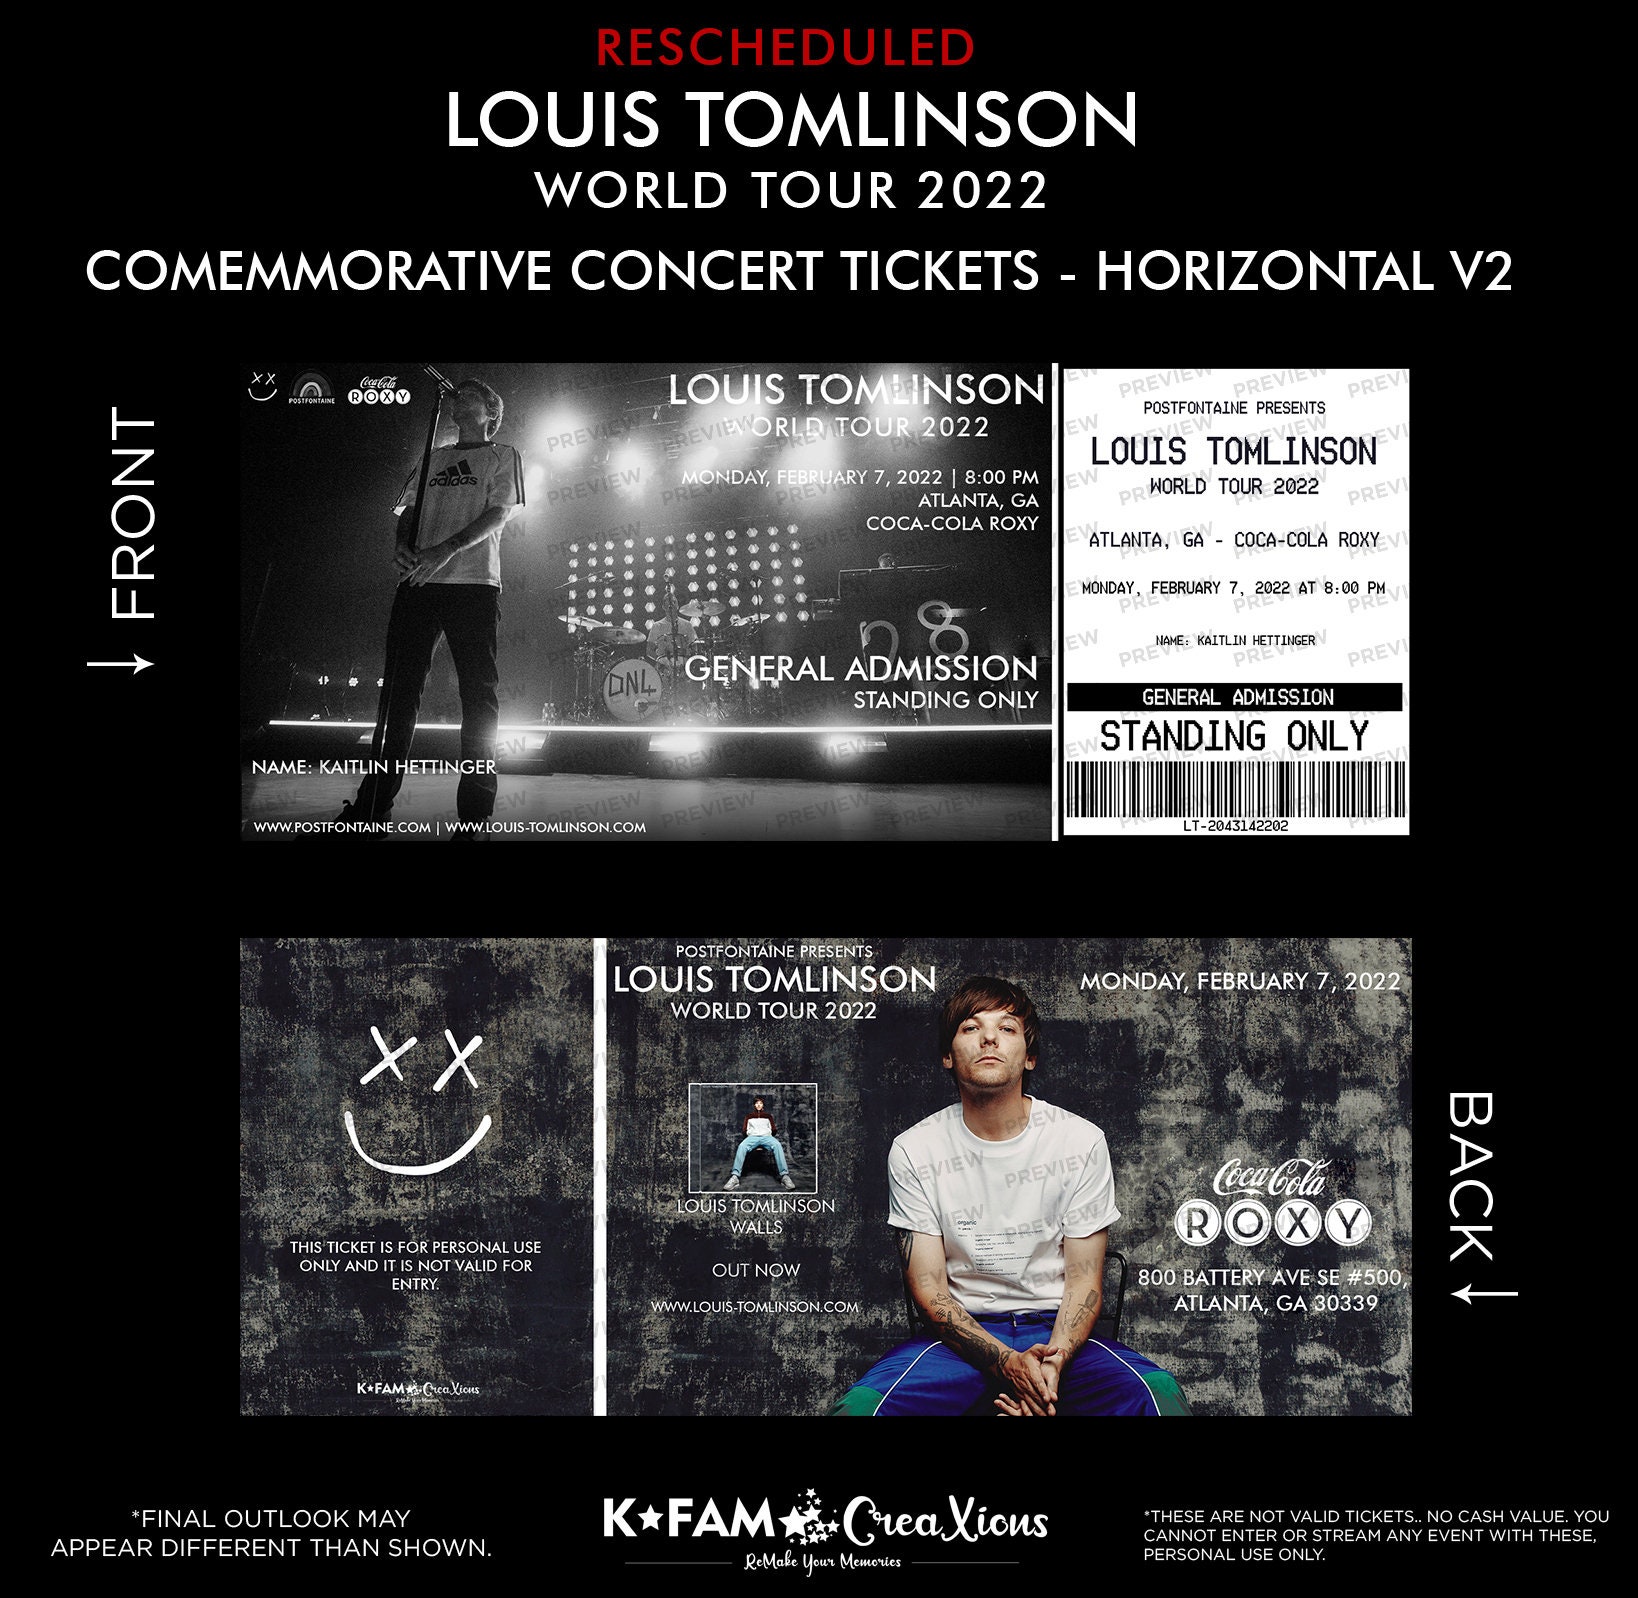 Louis Tomlinson World Tour 2022  Louis tomlinson, Tour posters, Tours